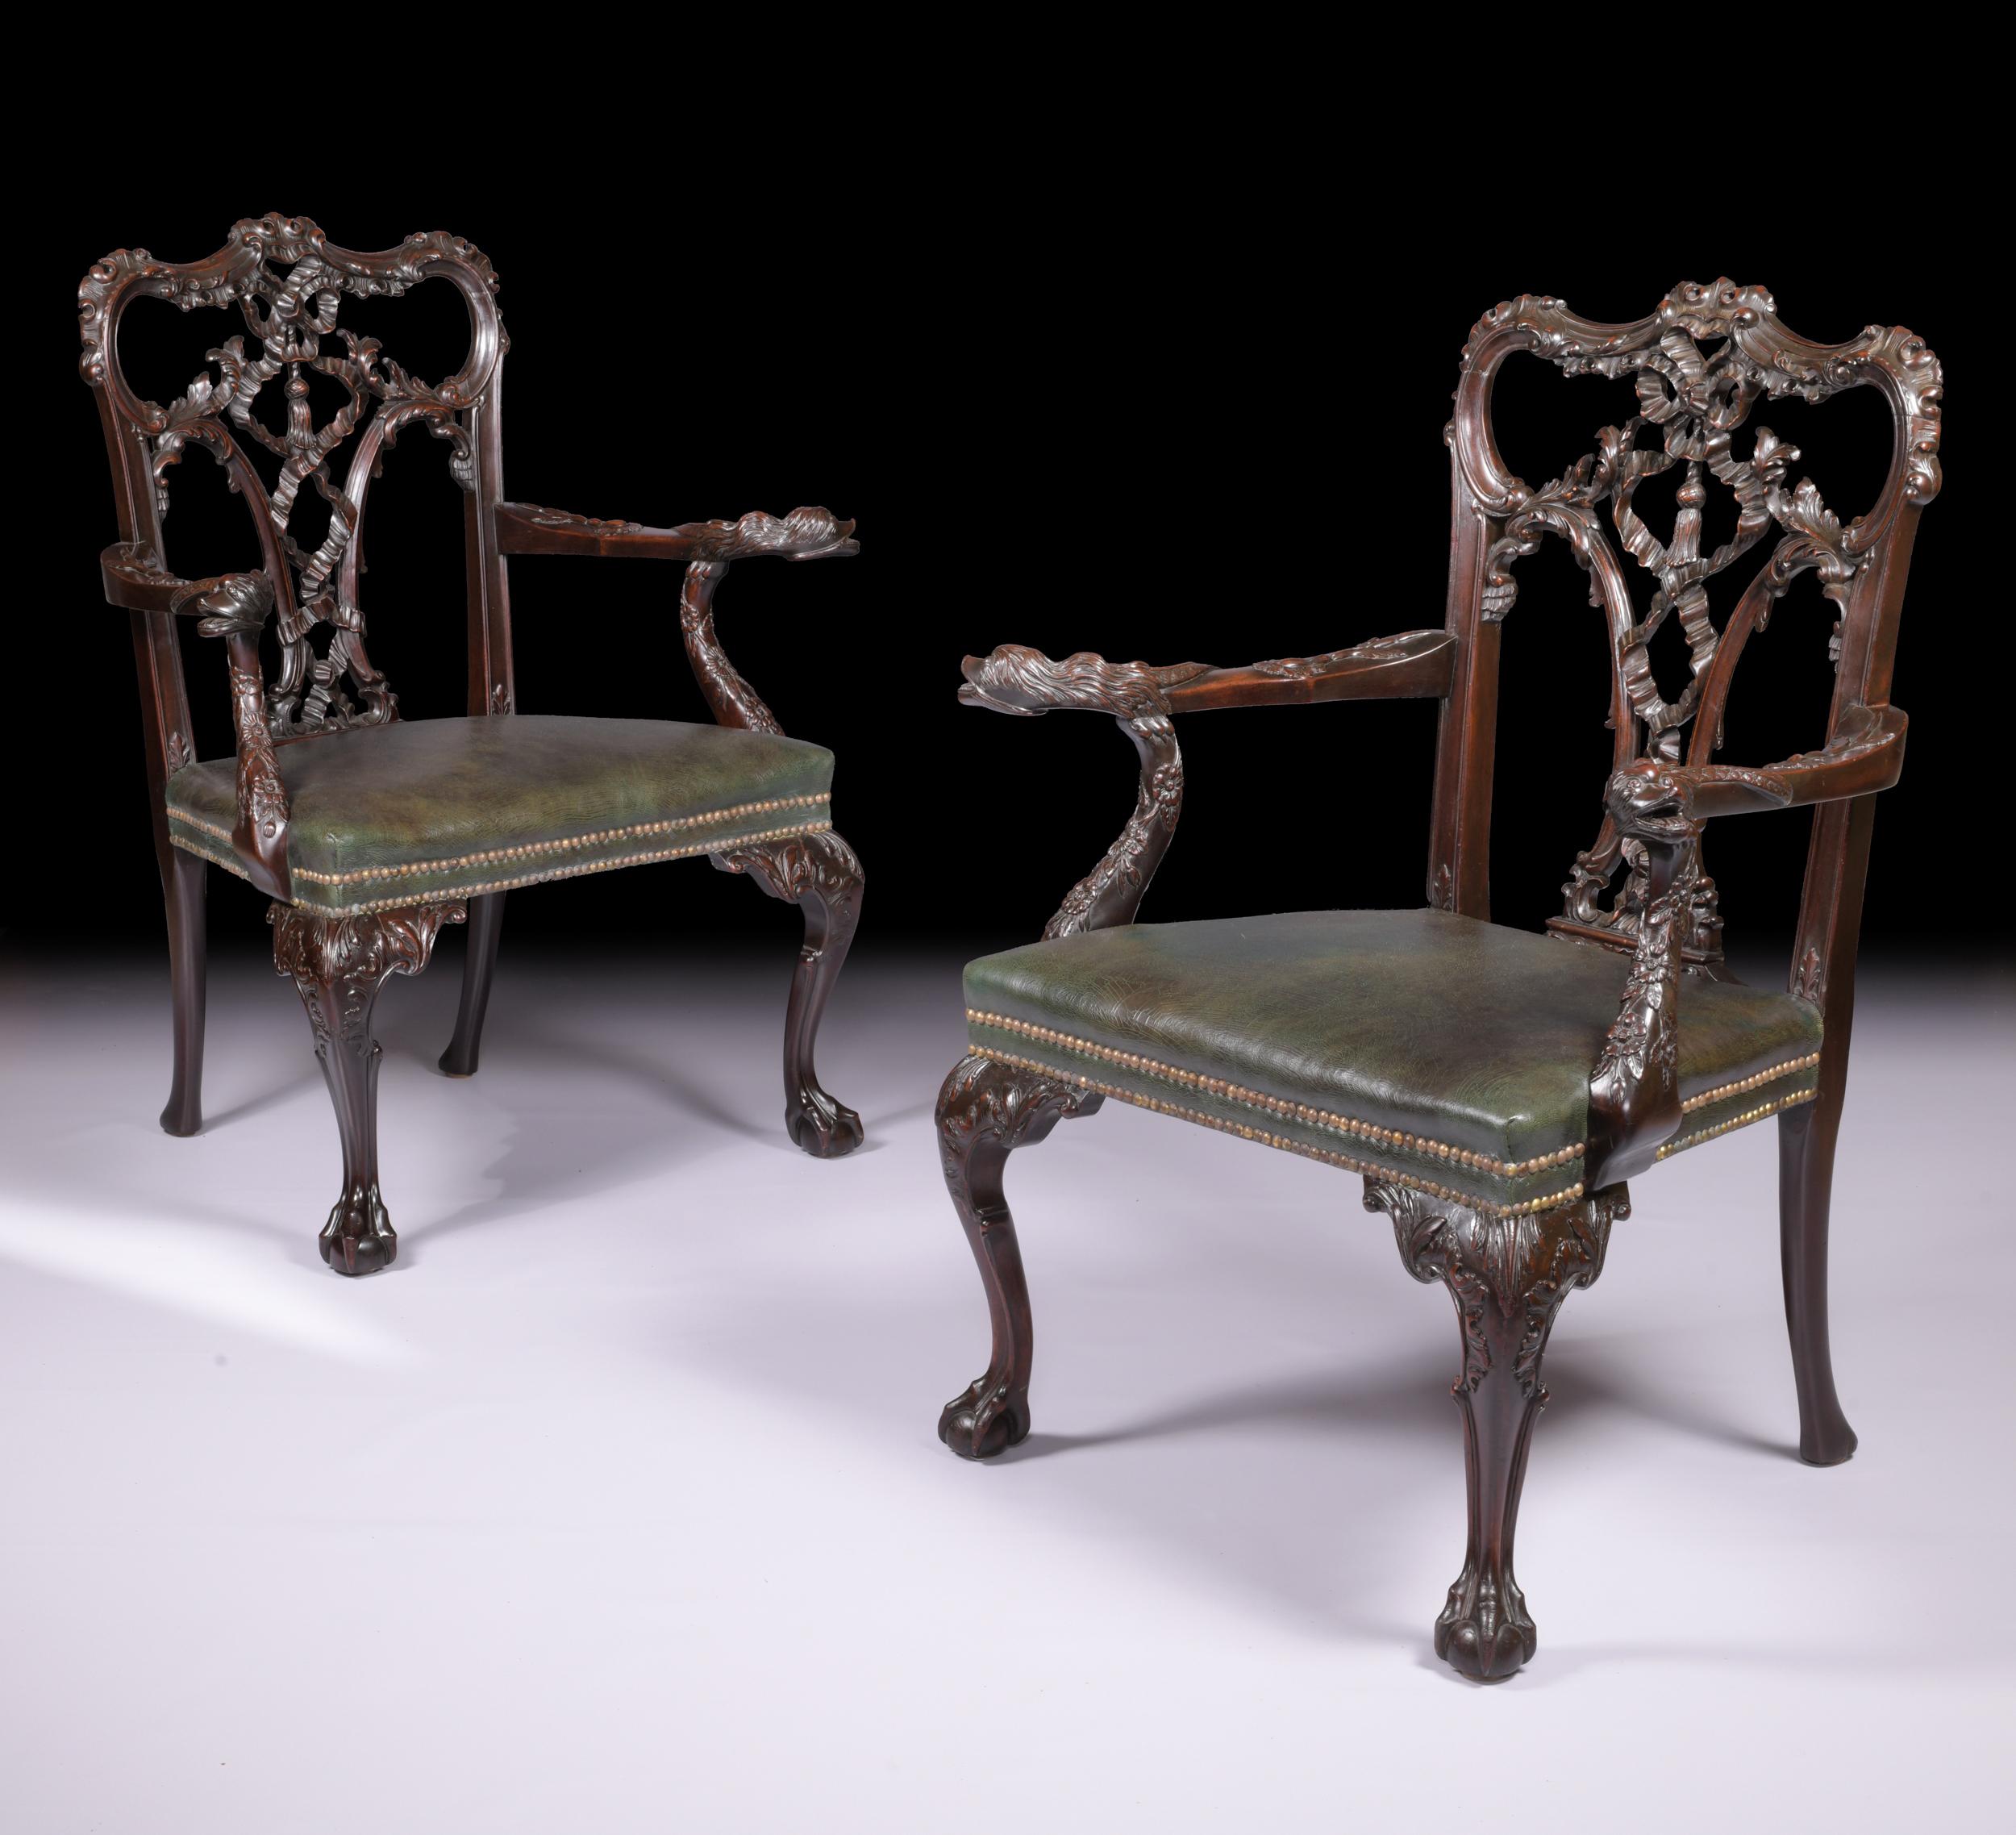 Ein außergewöhnliches Paar geschnitzter Mahagoni-Sessel aus dem 19. Jahrhundert im Stil von Thomas Chippendale. Das gewölbte Wappen befindet sich über einem kunstvoll geschnitzten und verschlungenen Bandschliff und ist mit dem gepolsterten Ledersitz